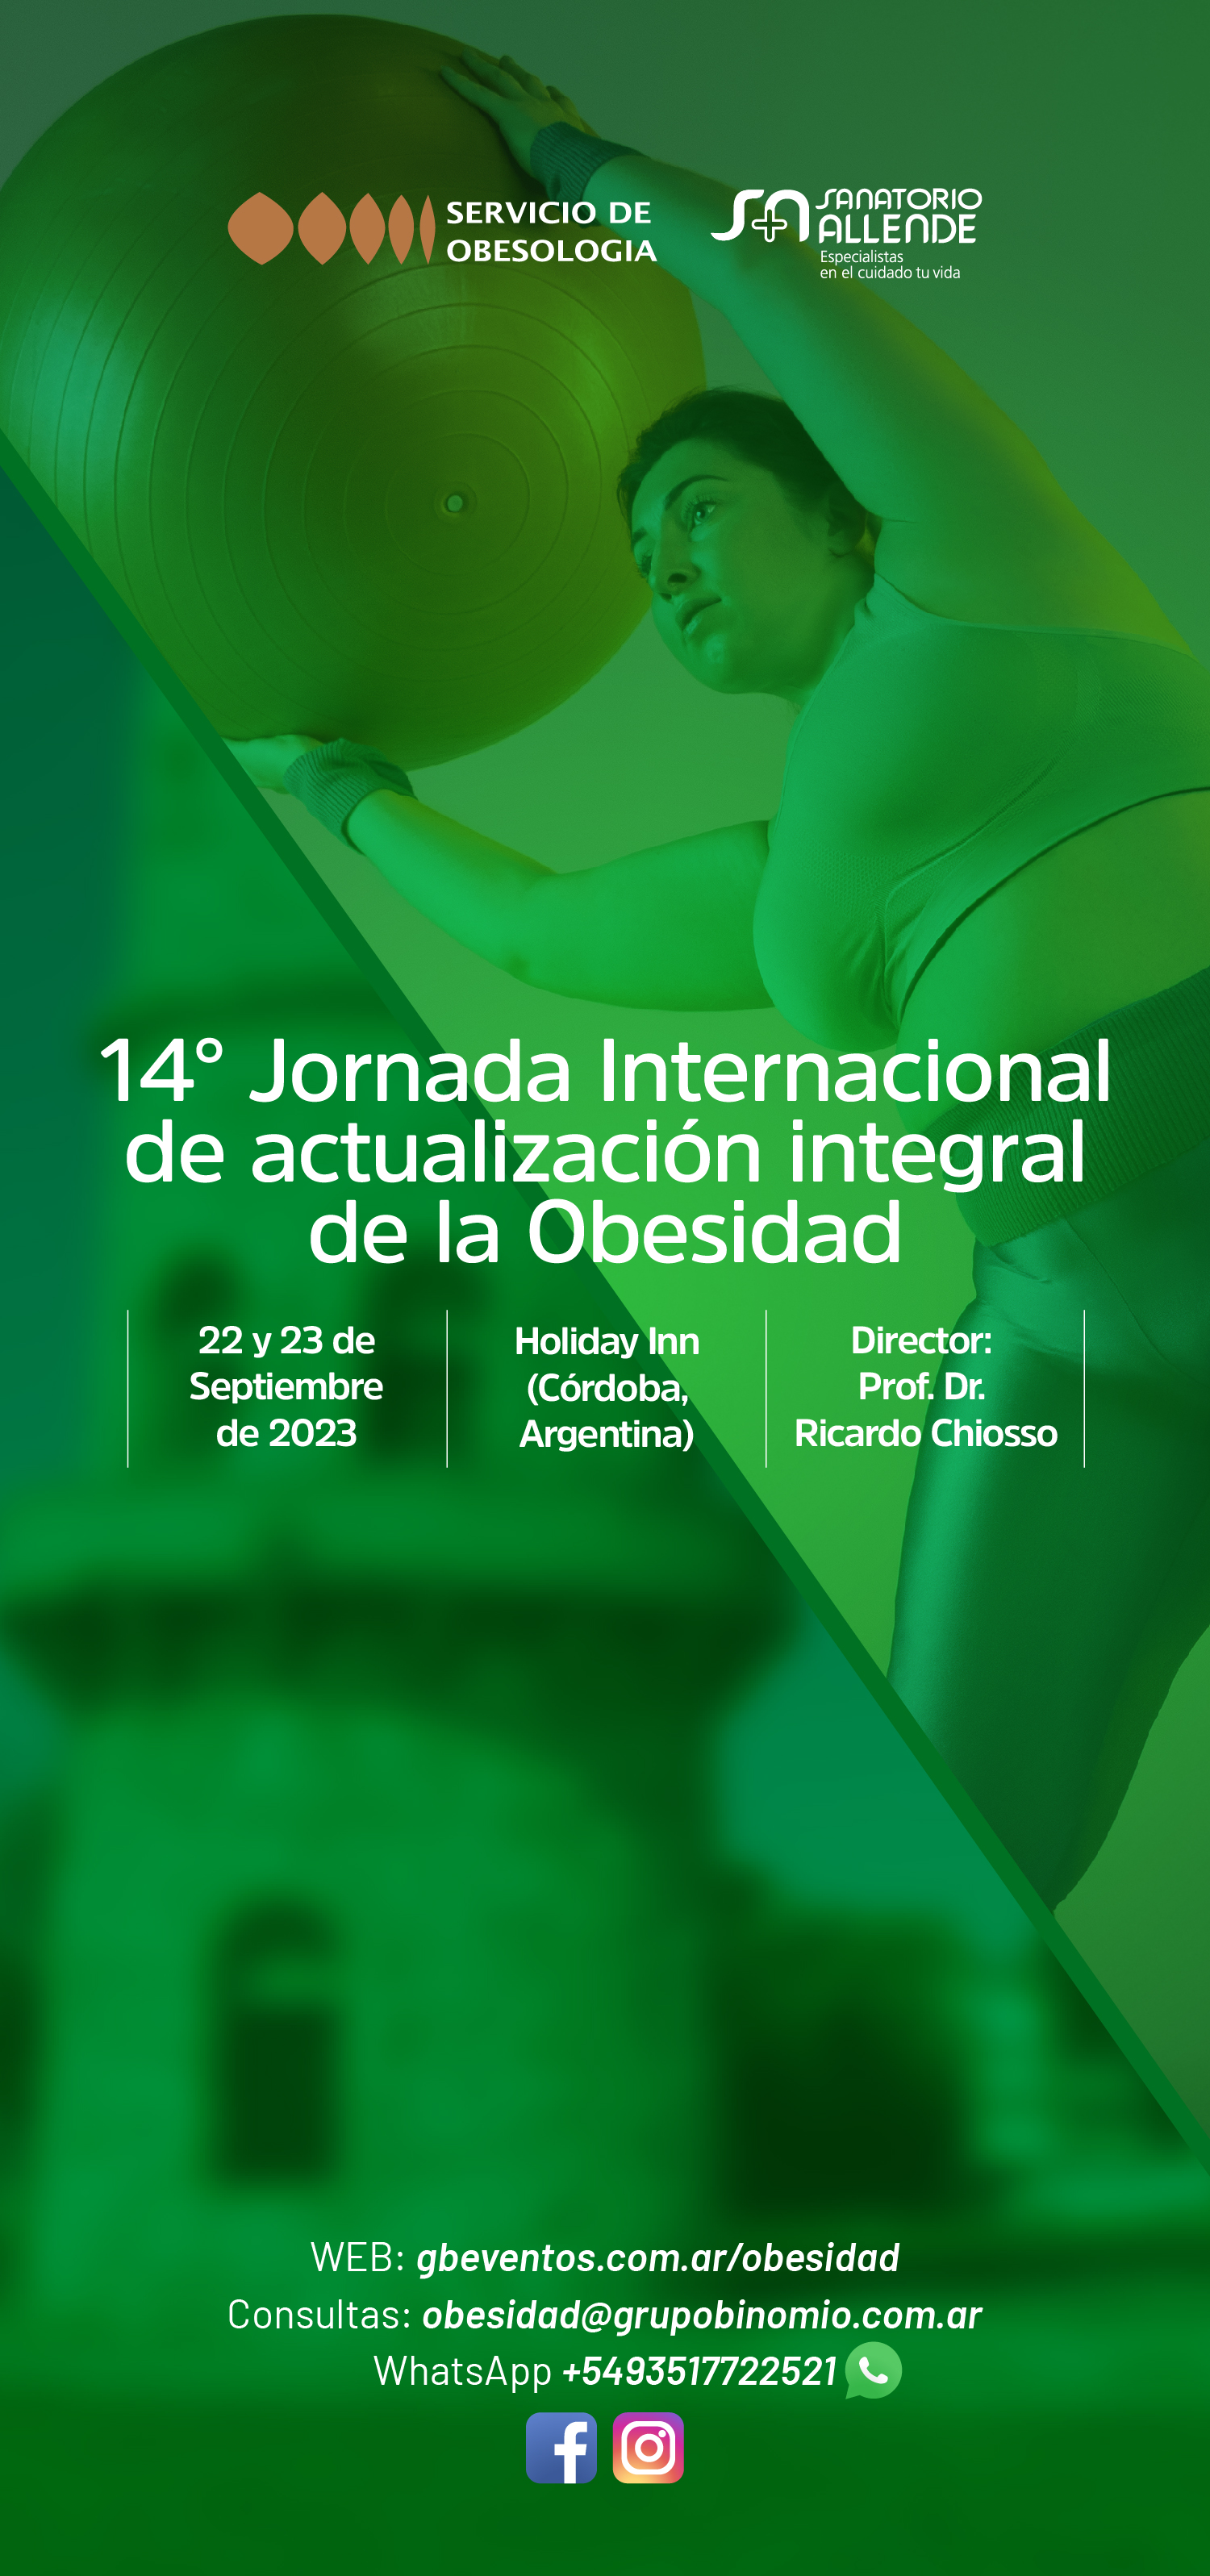 14° JORNADA INTERNACIONAL DE ACTUALIZACIÓN INTEGRAL DE LA OBESIDAD